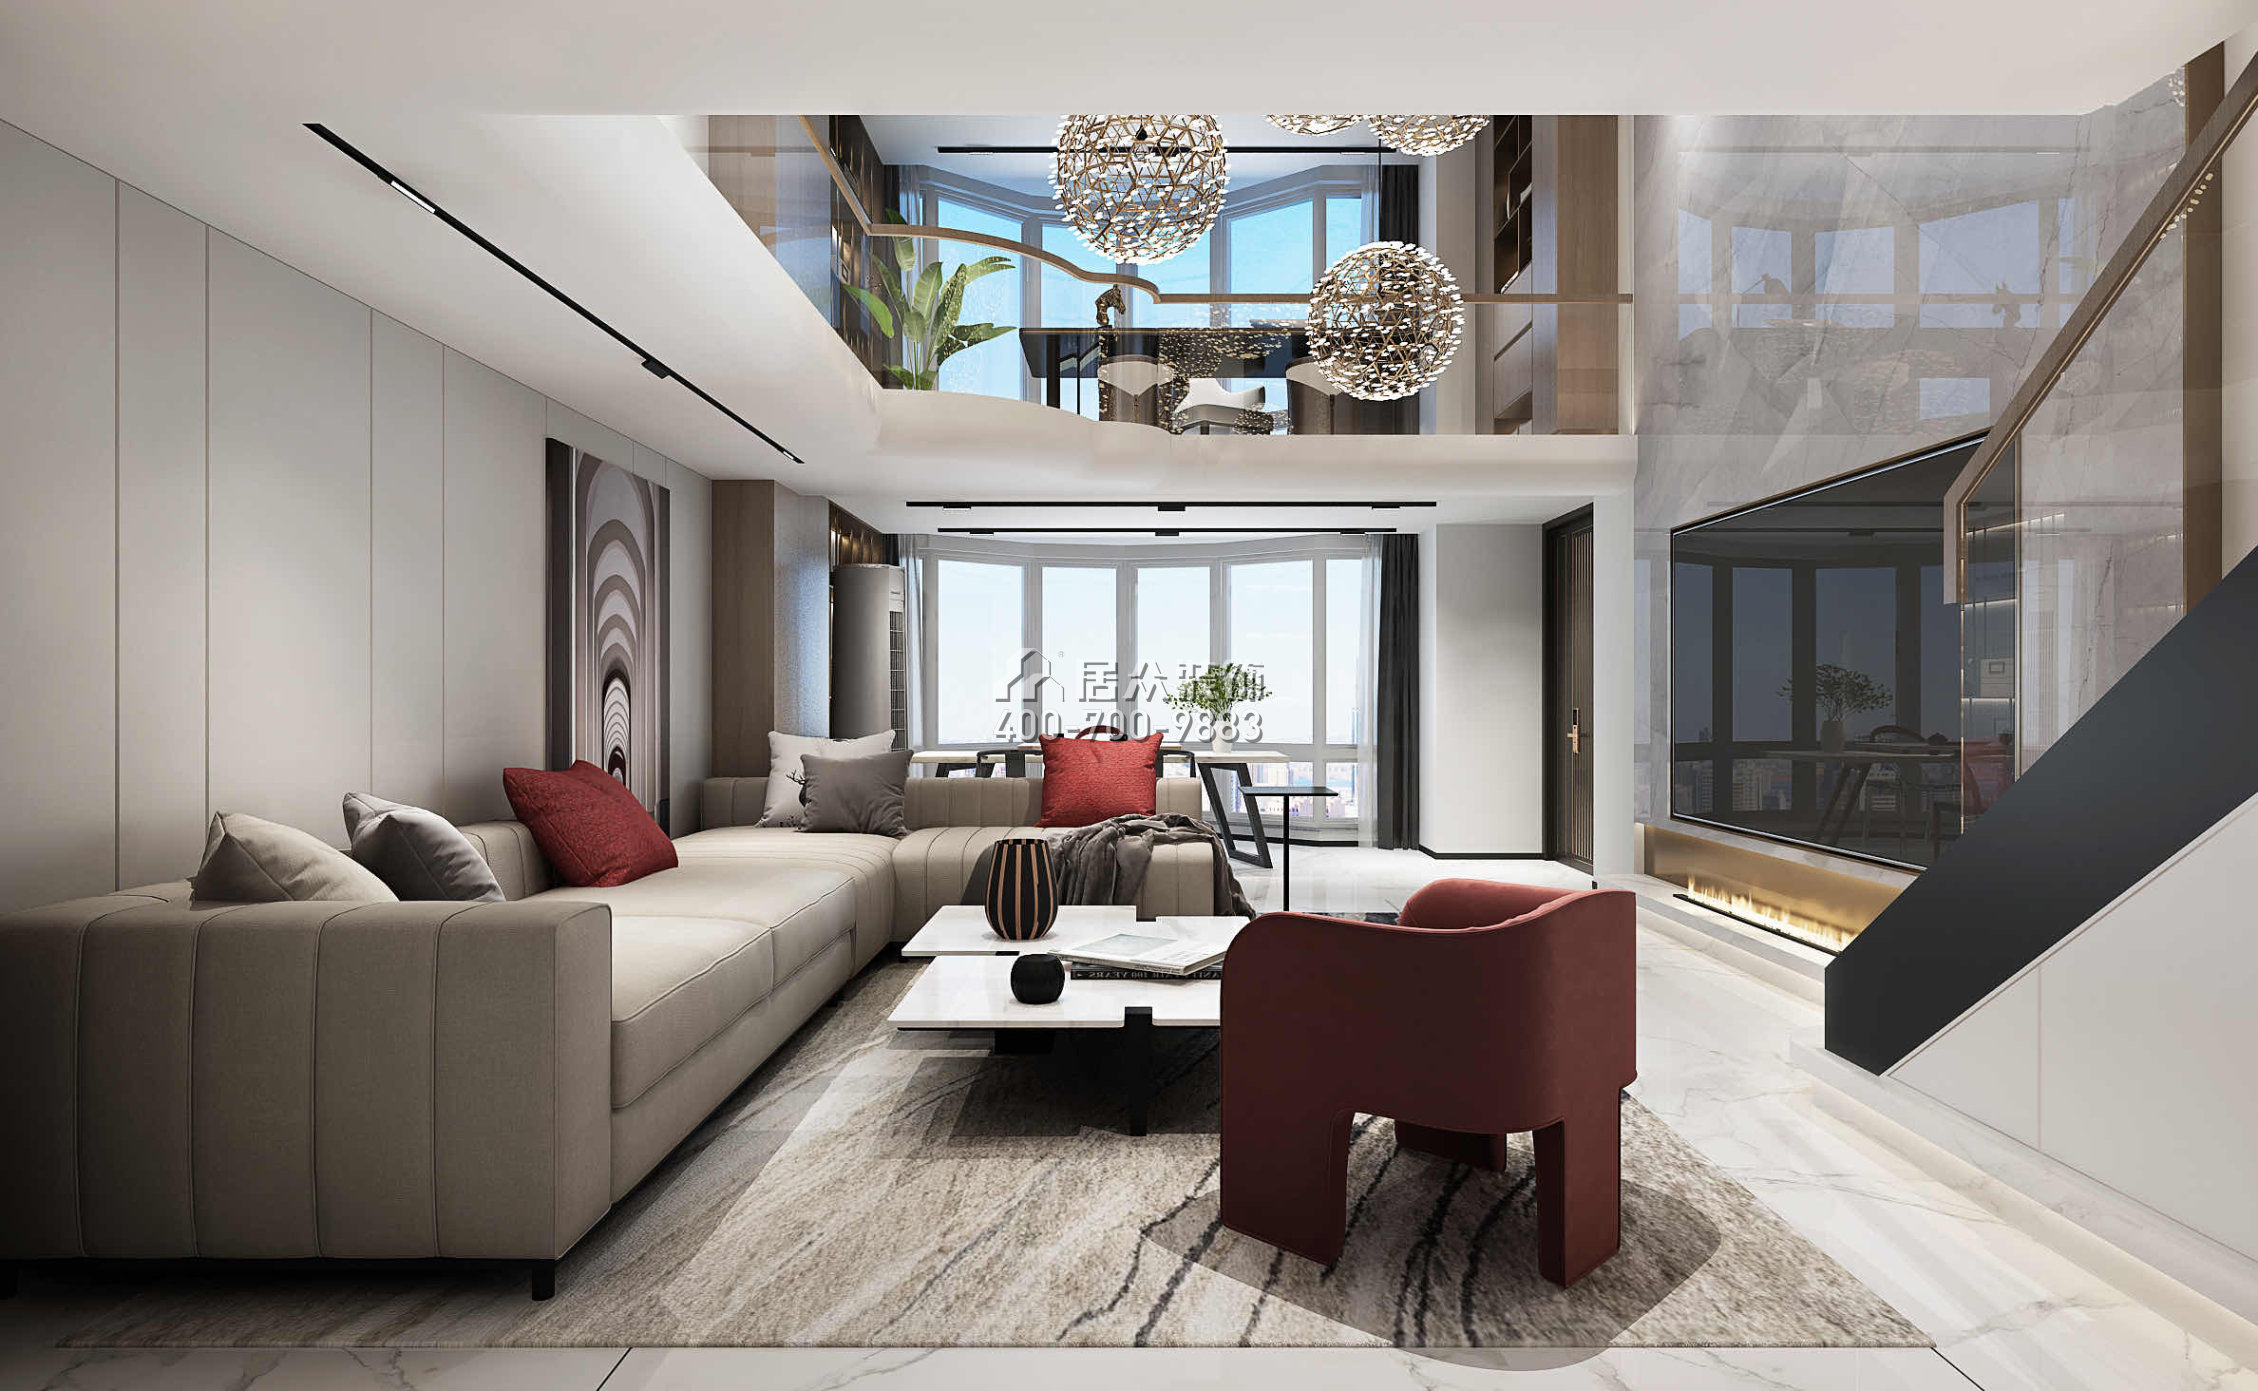 瑞景新村150平方米现代简约风格复式户型客厅装修效果图